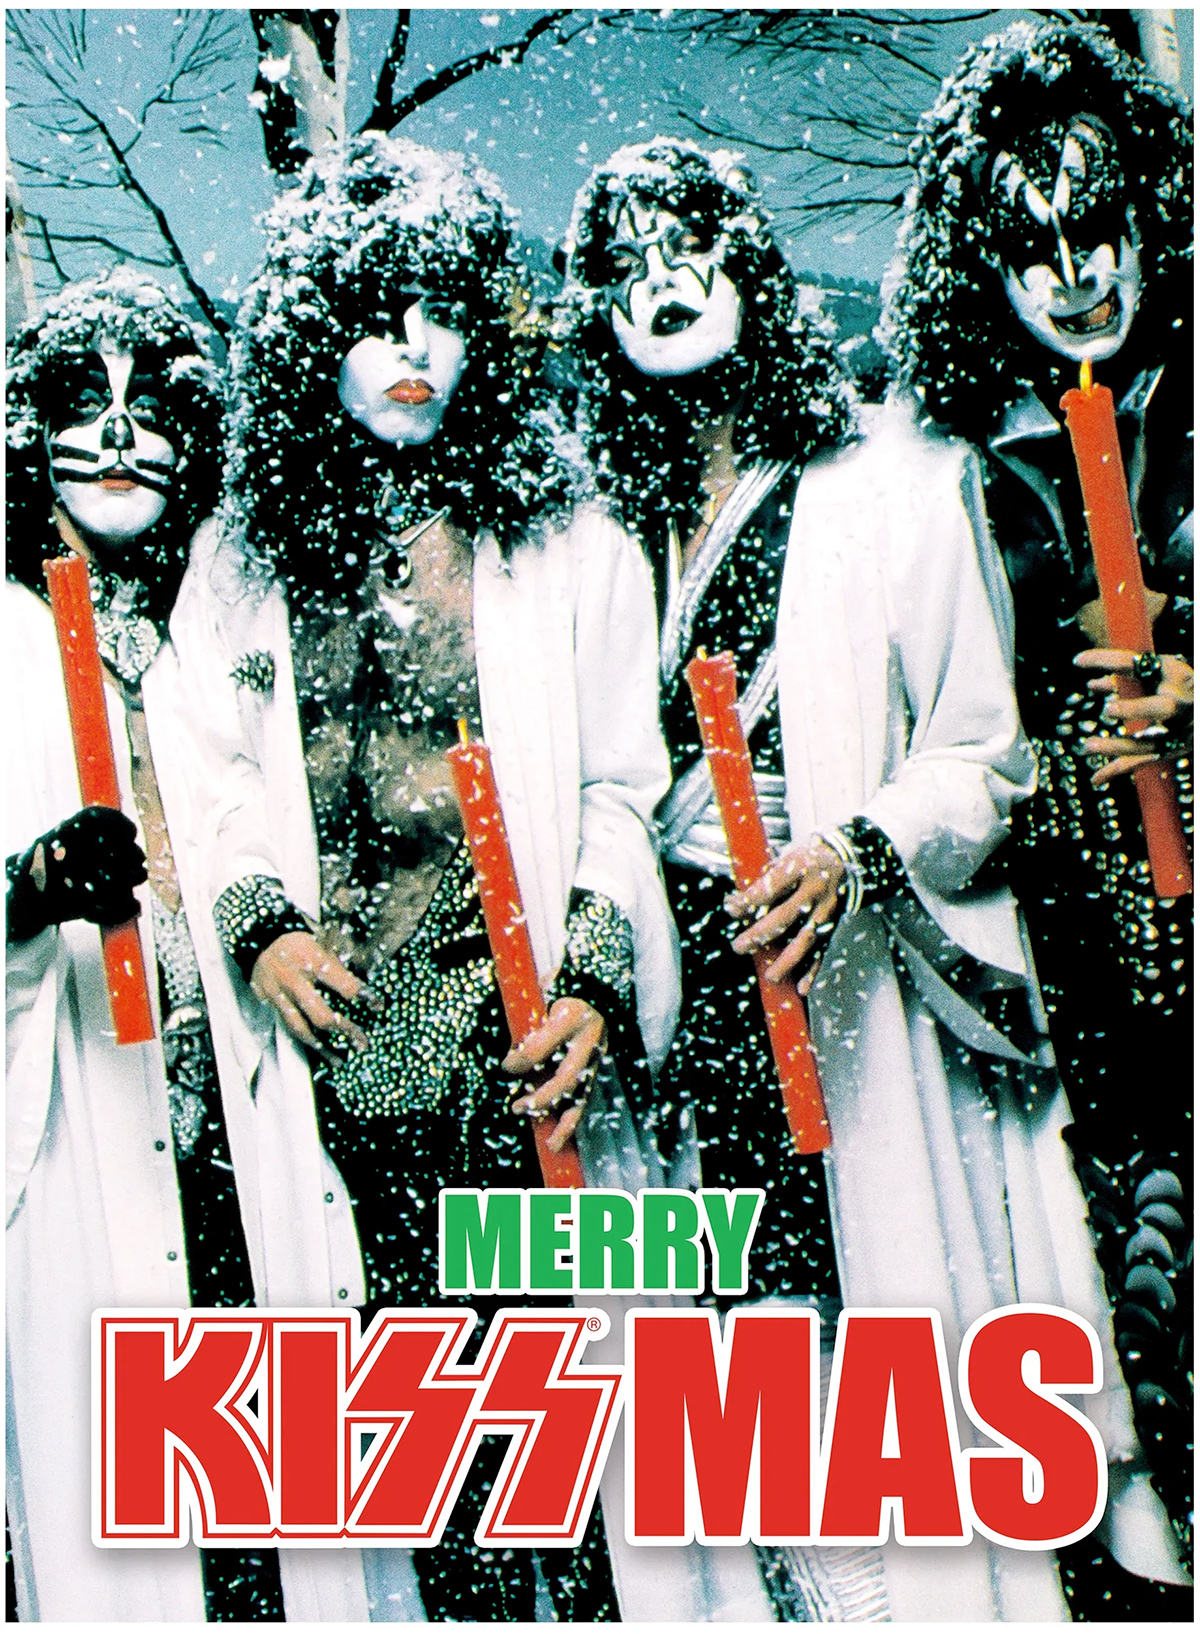 Quebra-Cabeça Merry Kissmas com a Banda de Rock KISS